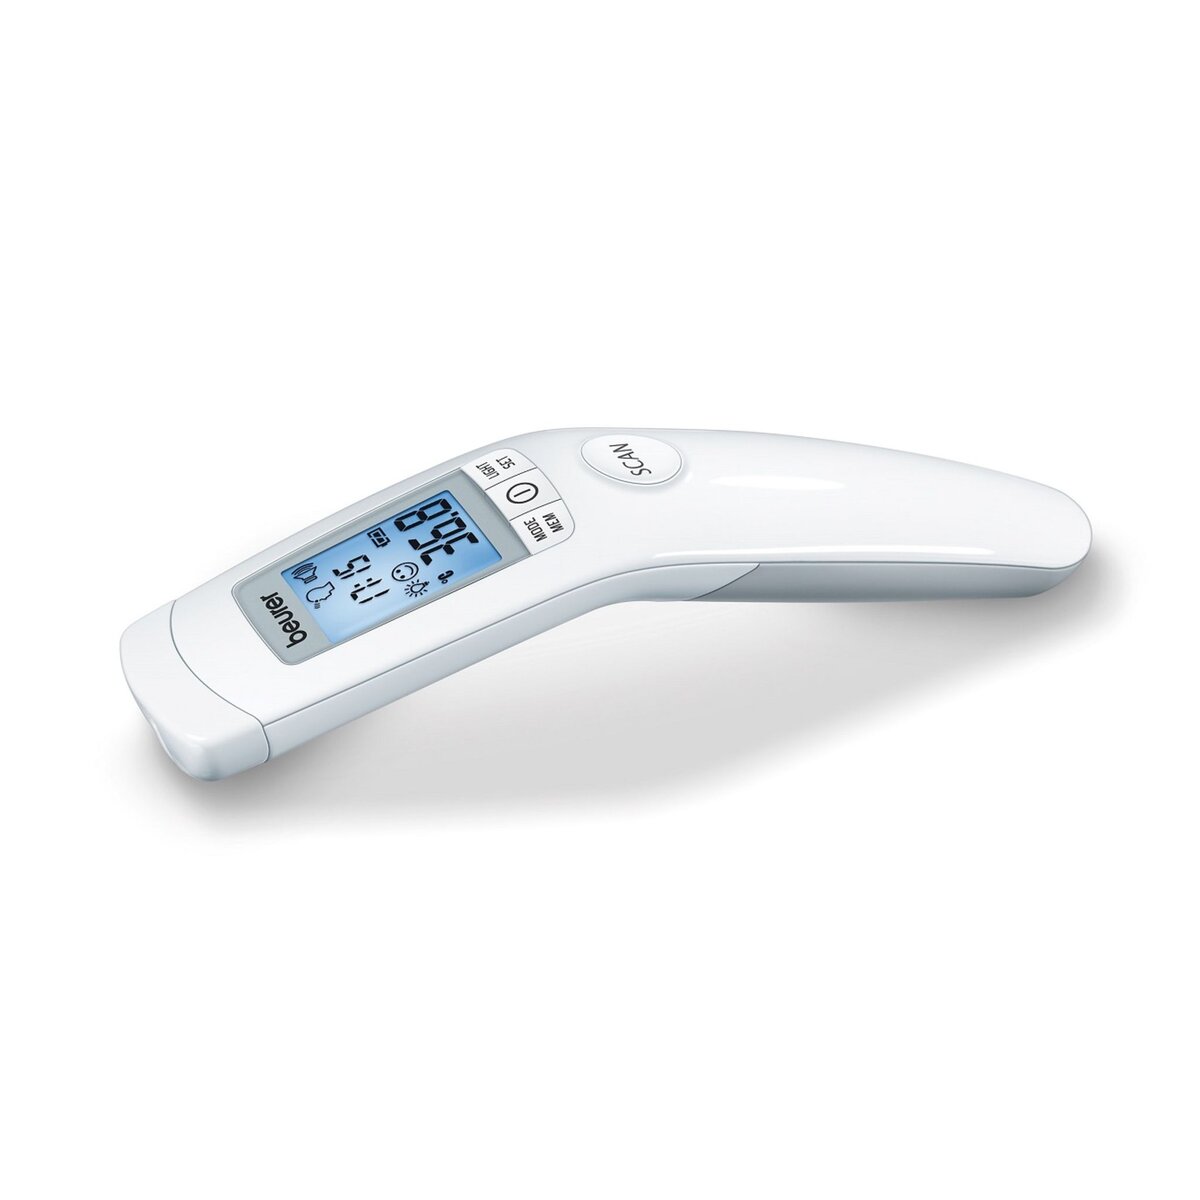 BEURER Thermomètre médical infrarouge sans contact 3 en 1 FT 90 : mesure la température corporelle, ambiante et d'objet